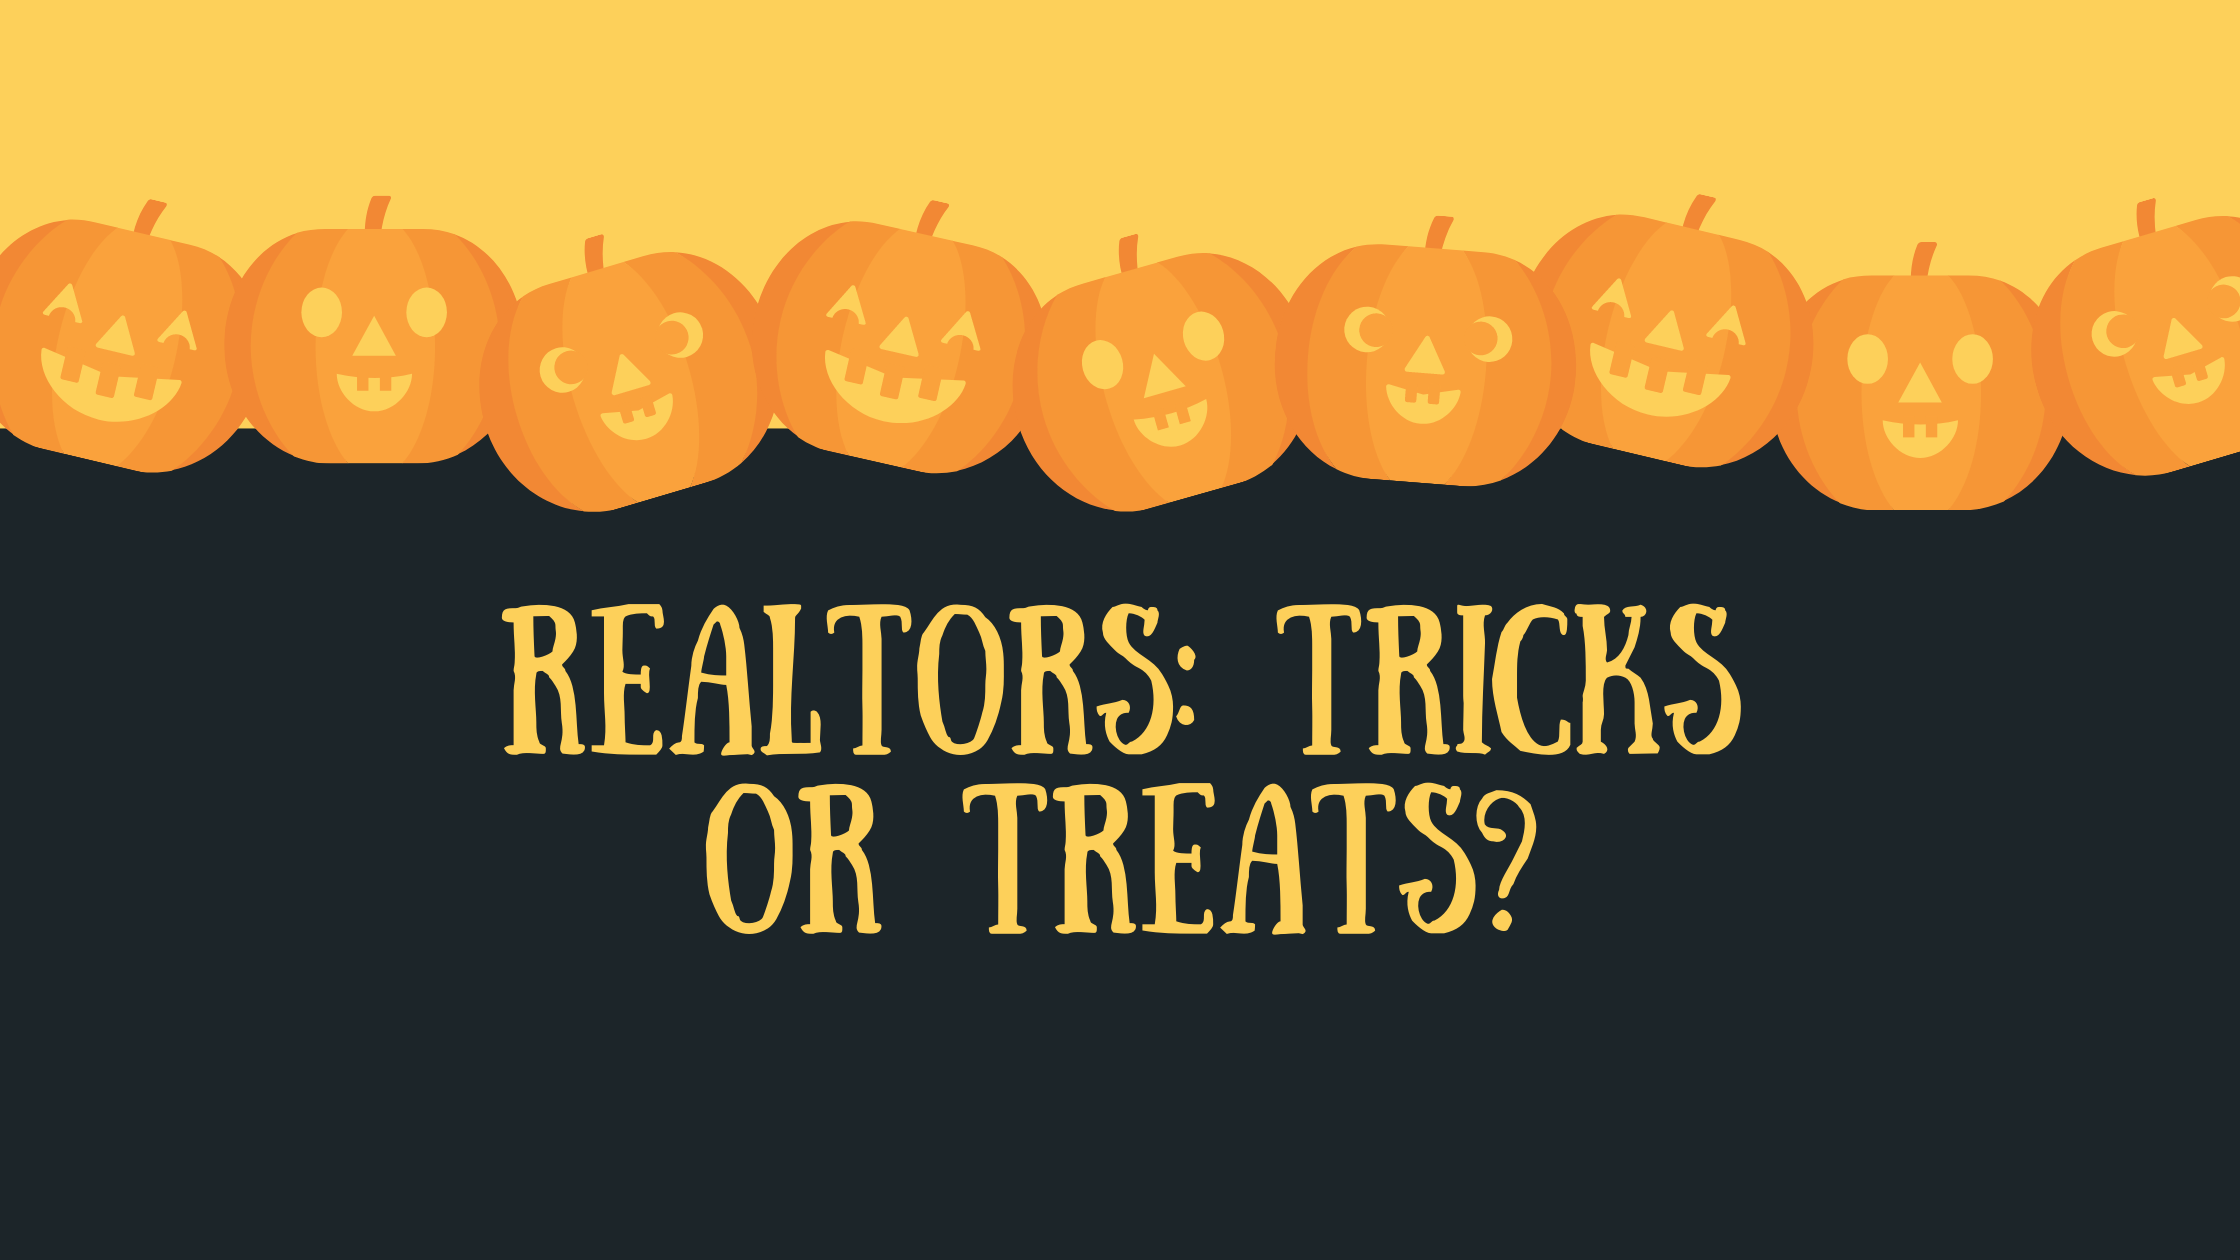 Realtors: Tricks or Treats??